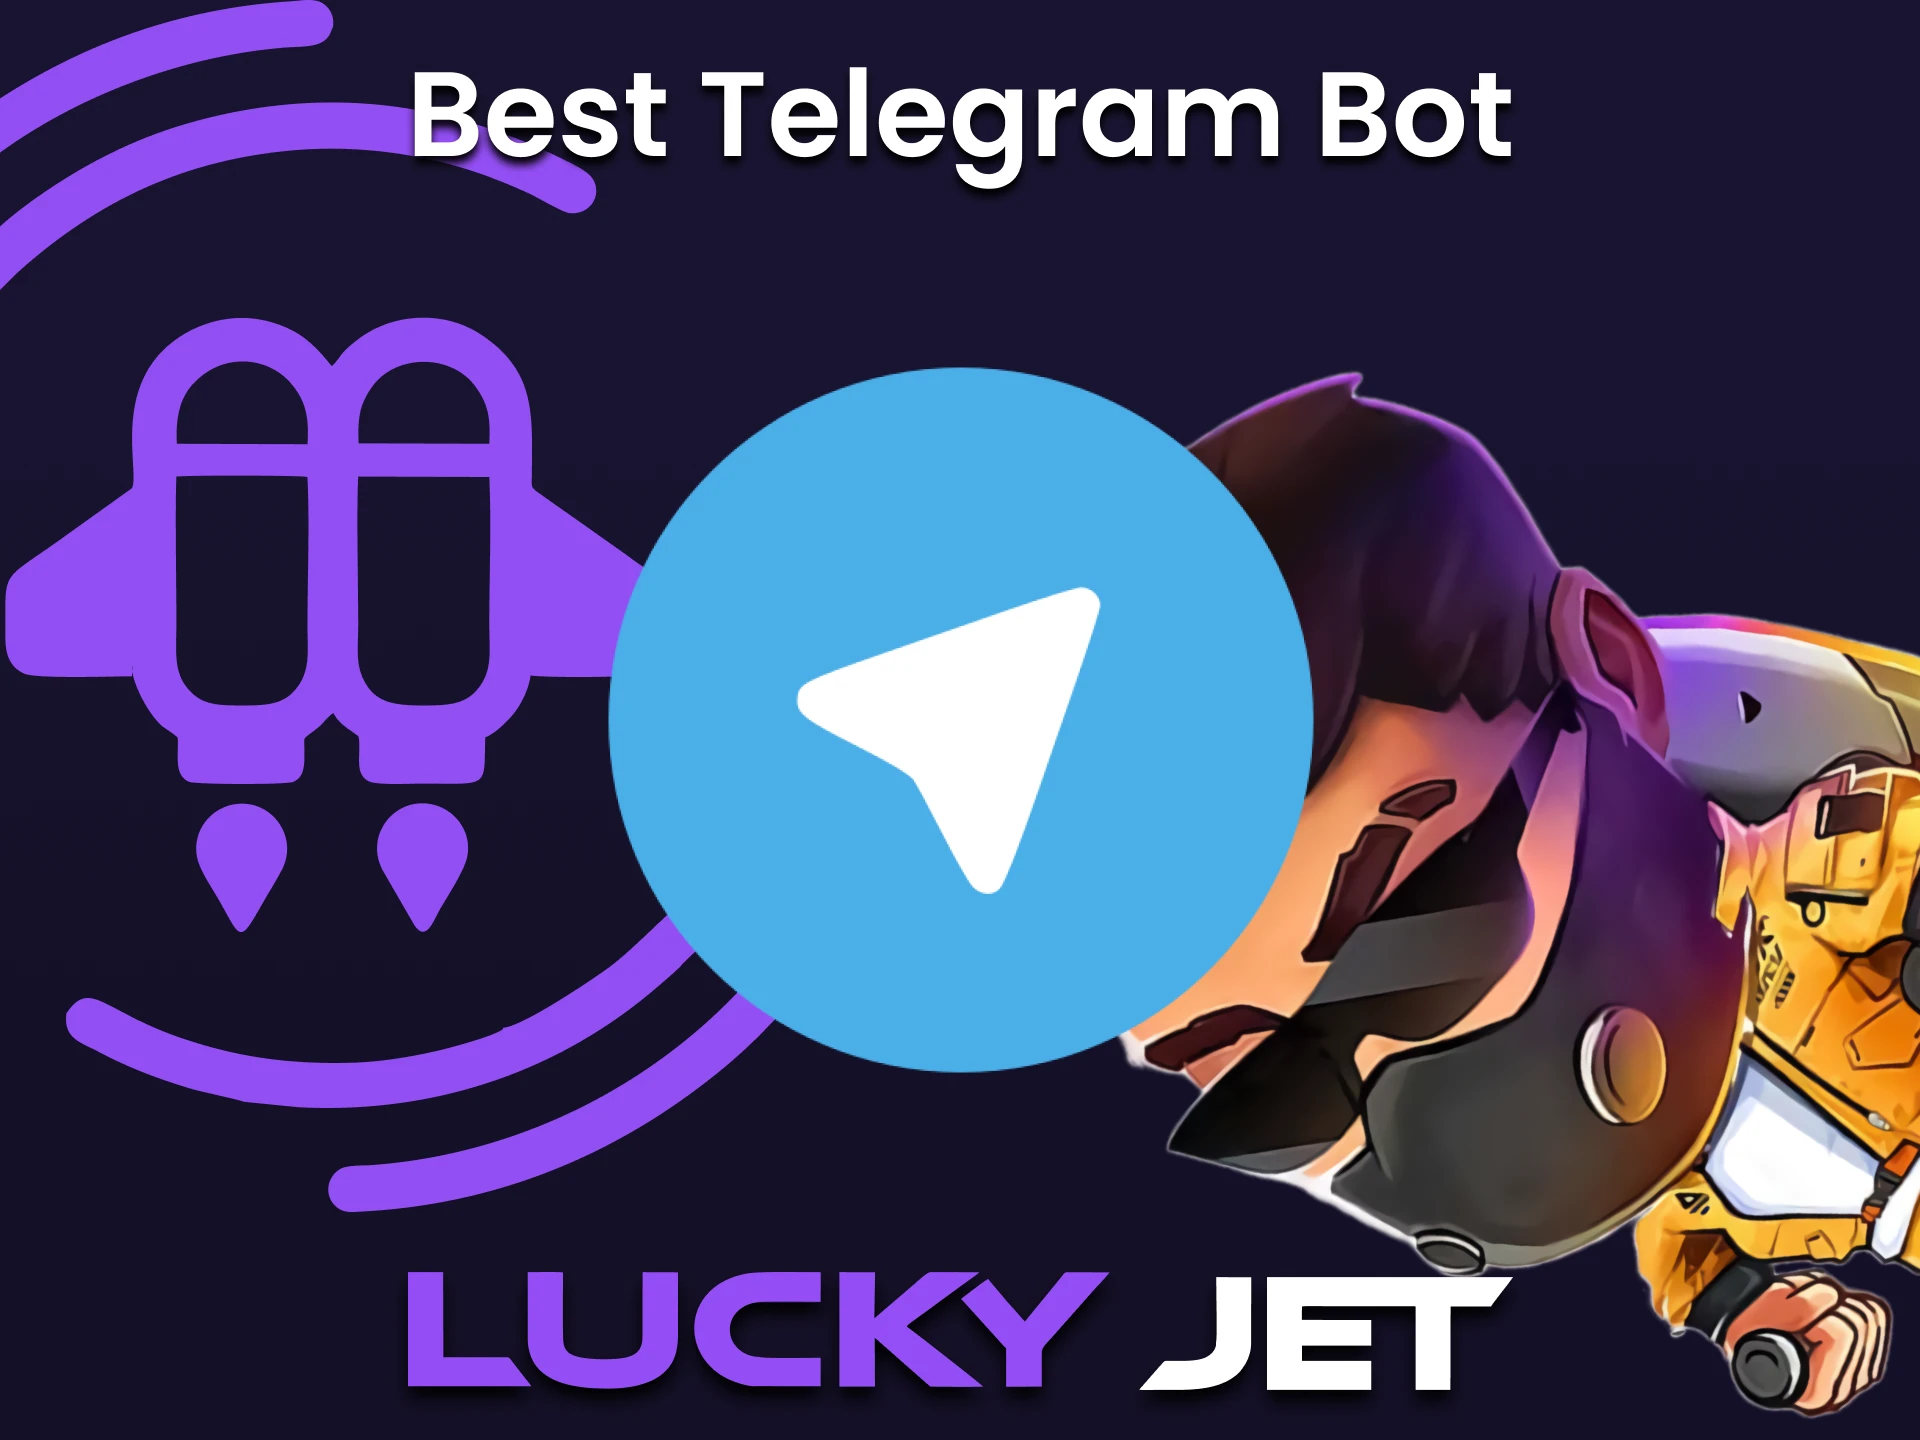 Vous pouvez utiliser le signal pour jouer à Lucky Jet via Telegram.